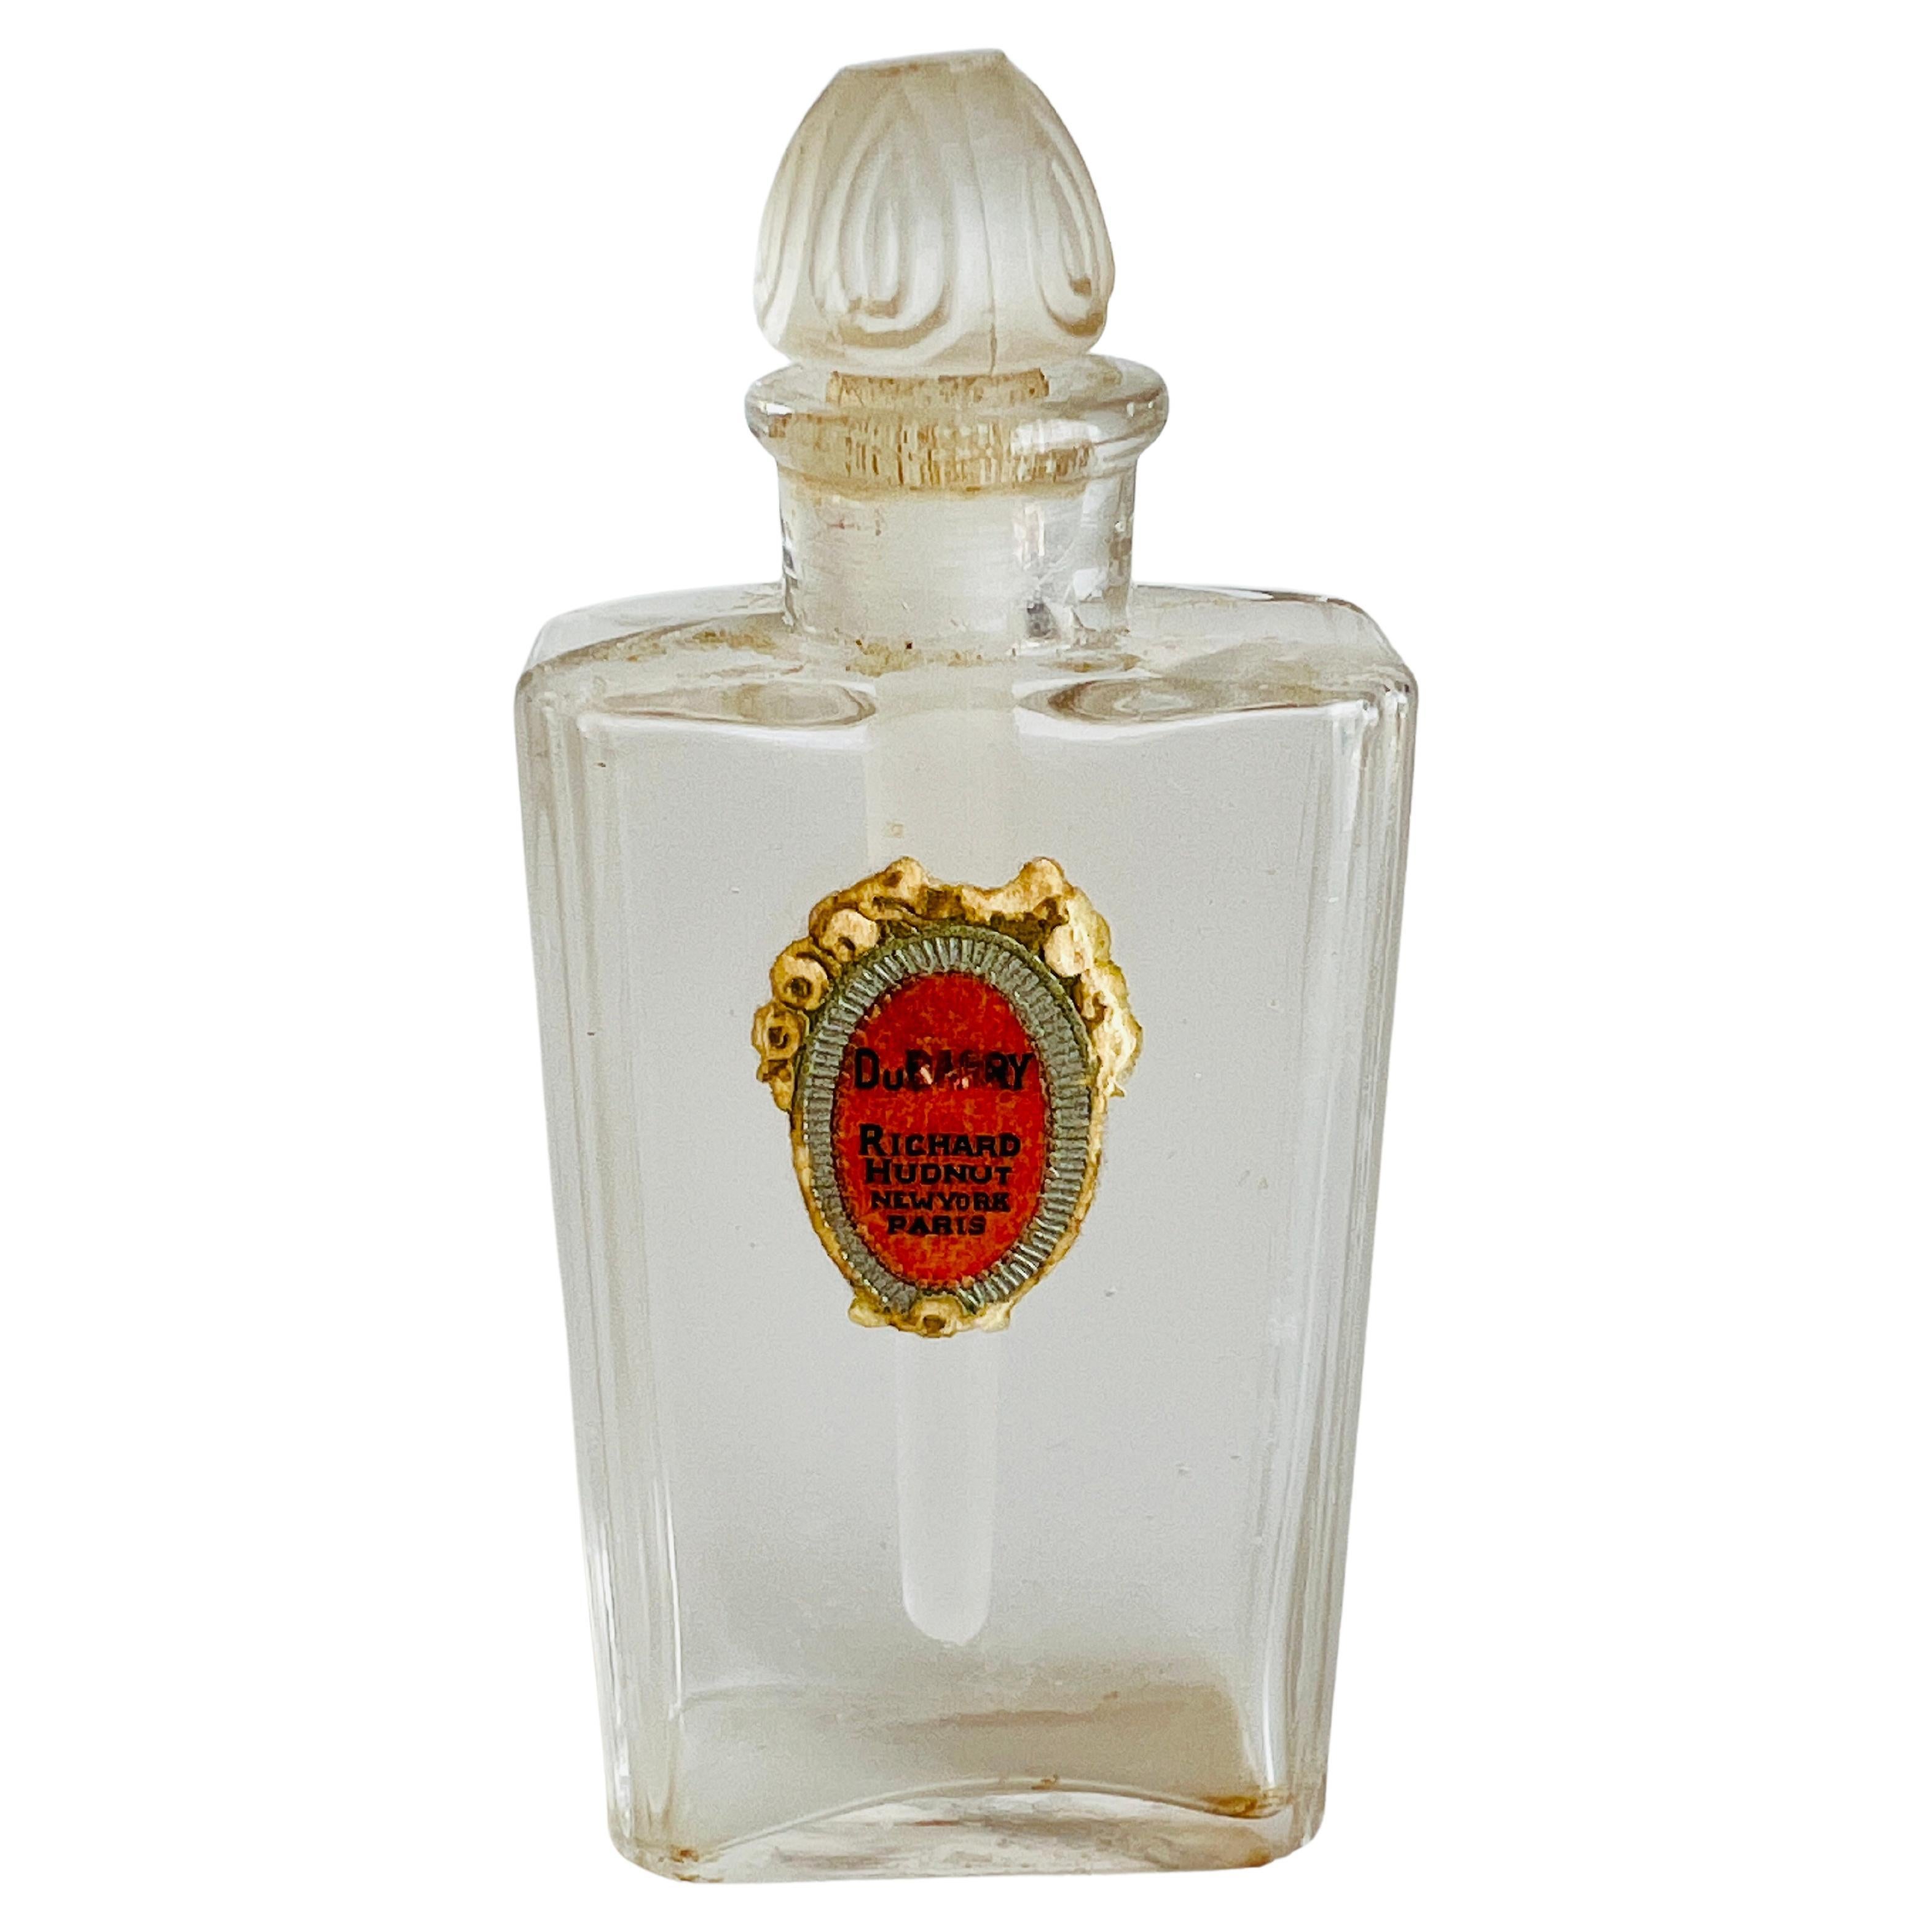 Bouteille de parfum Richard Hudnut Dubarry des années 1920 Bouchon en verre moulé et givré